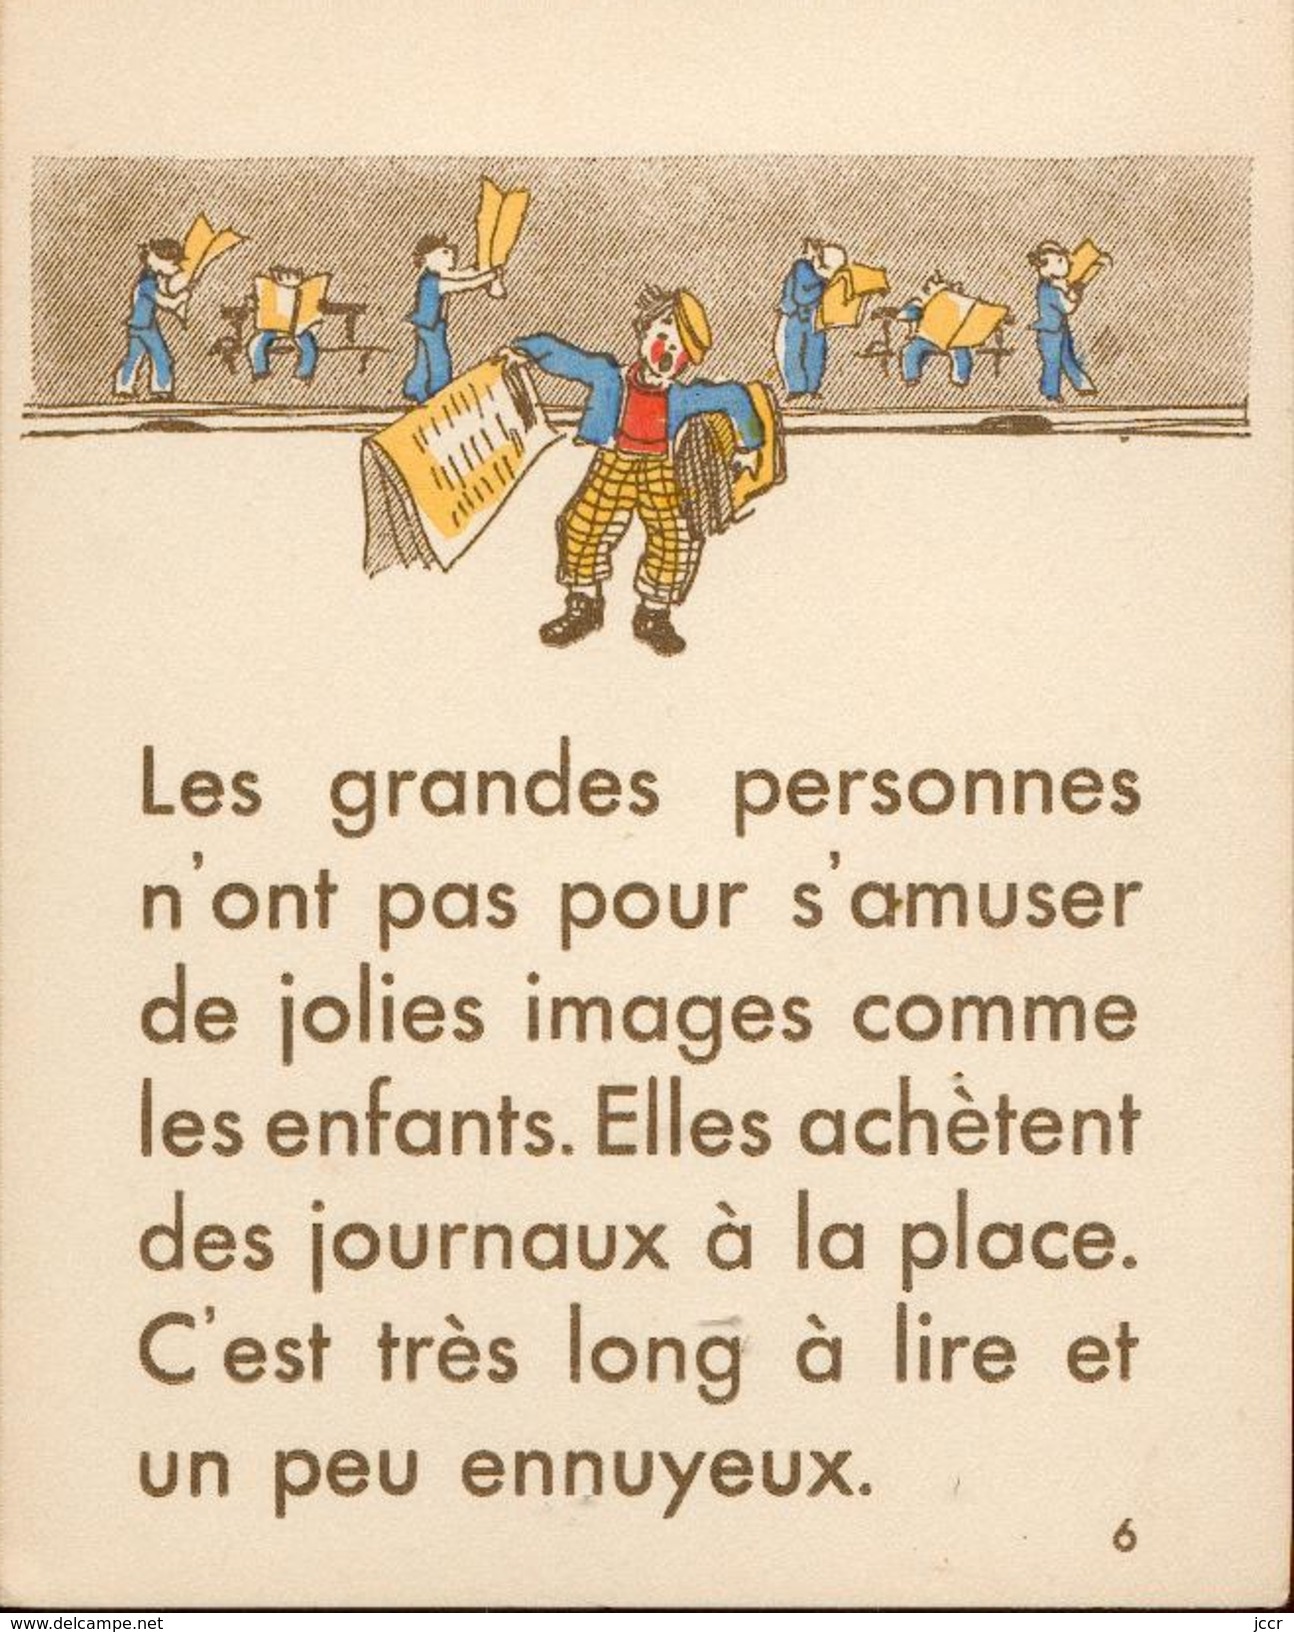 Les Petits Métiers - Textes et Dessins de F. Estachy - 10 Planches avec Textes et Dessins en couleurs - 1939